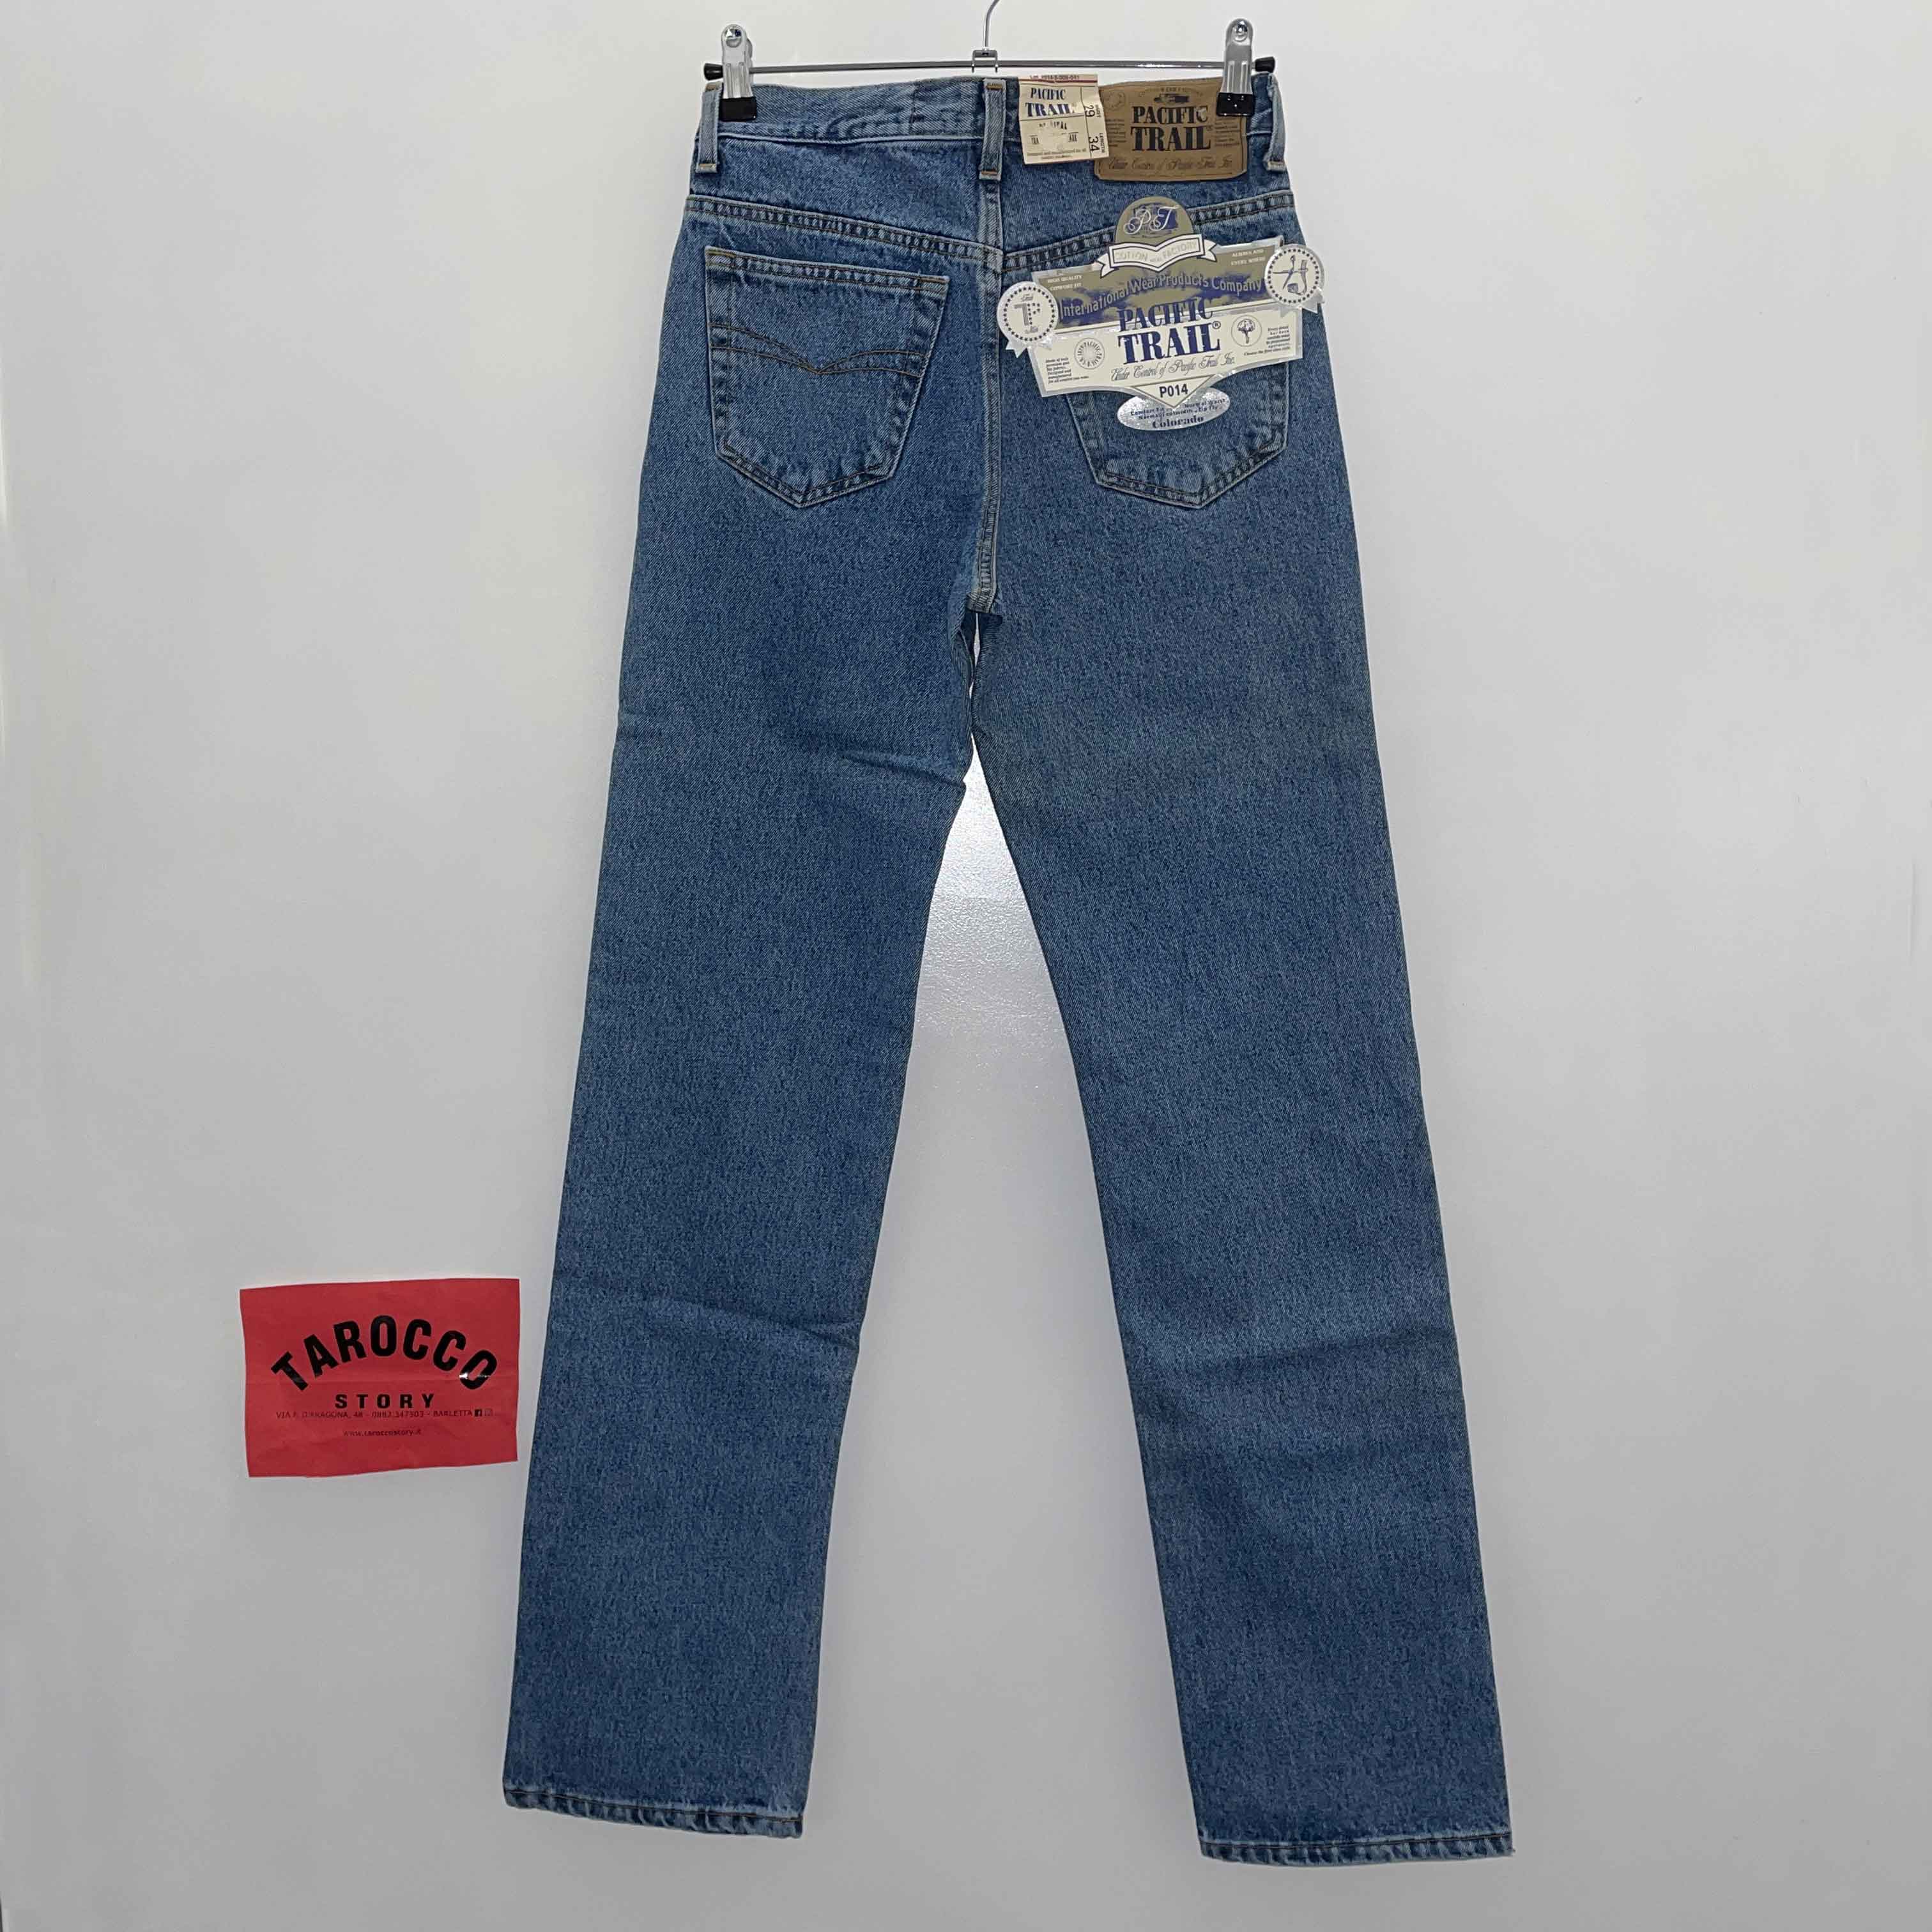 Jeans Pacific Trail Vintage